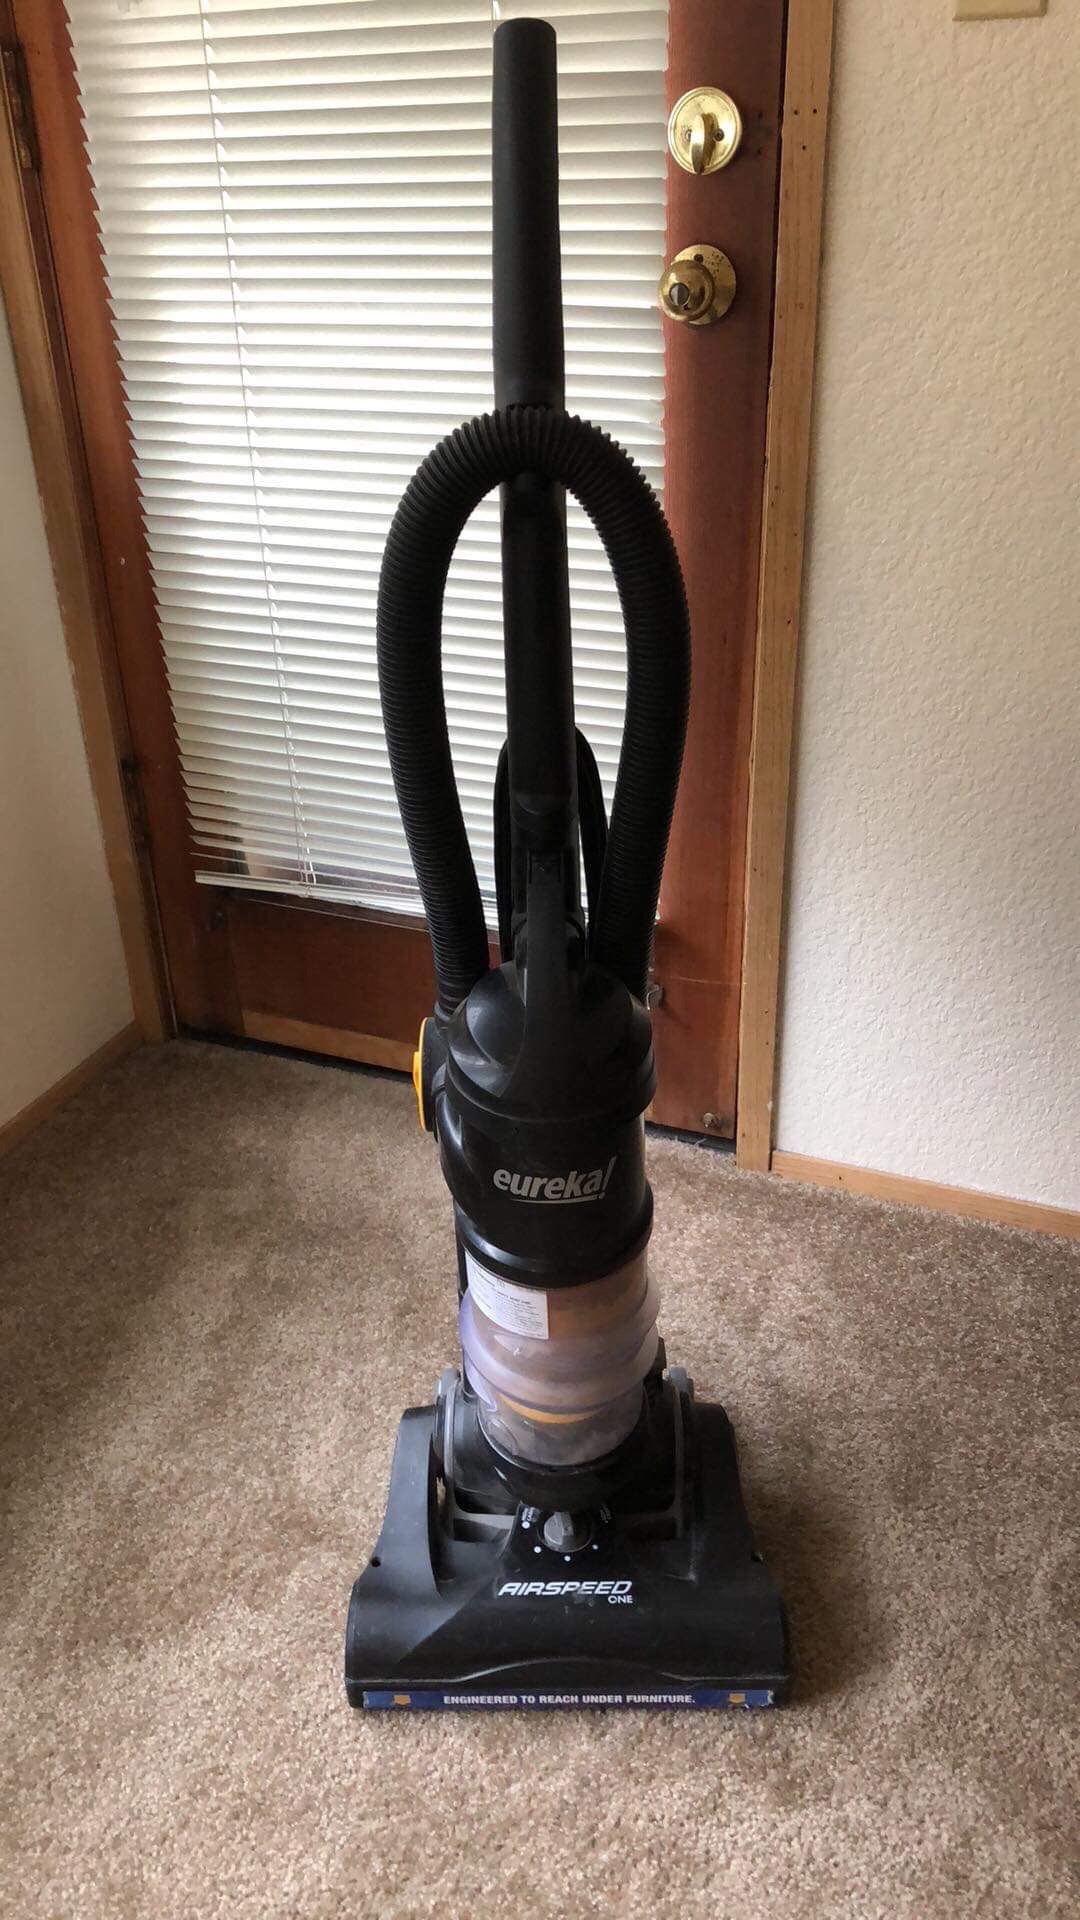 Eurekal vacuum cleaner